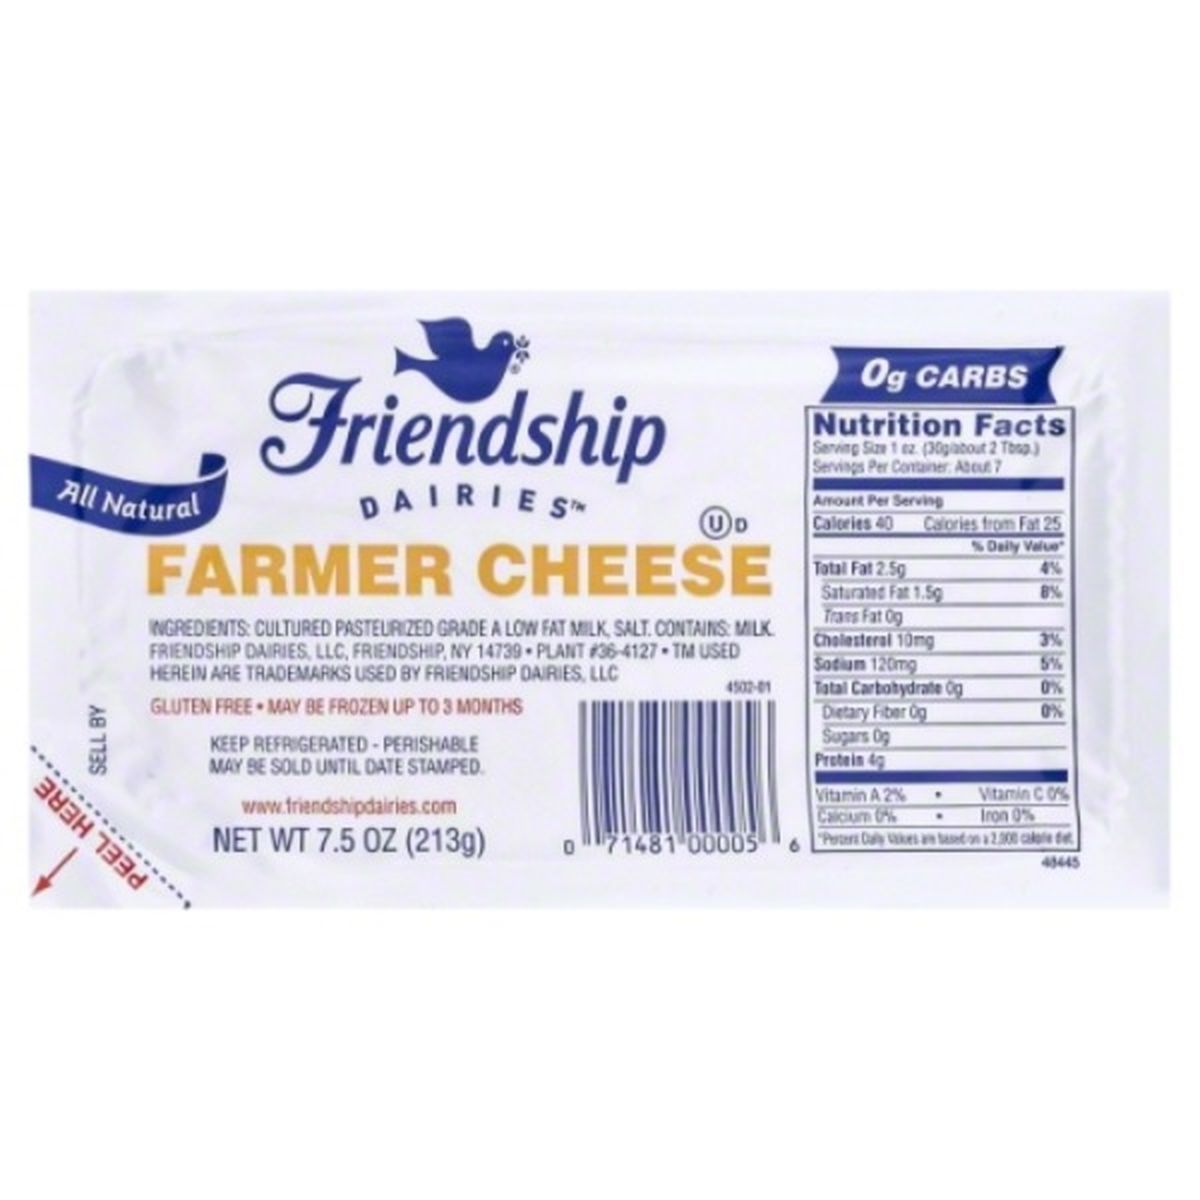 Calories in Friendship Dairies Farmer Cheese